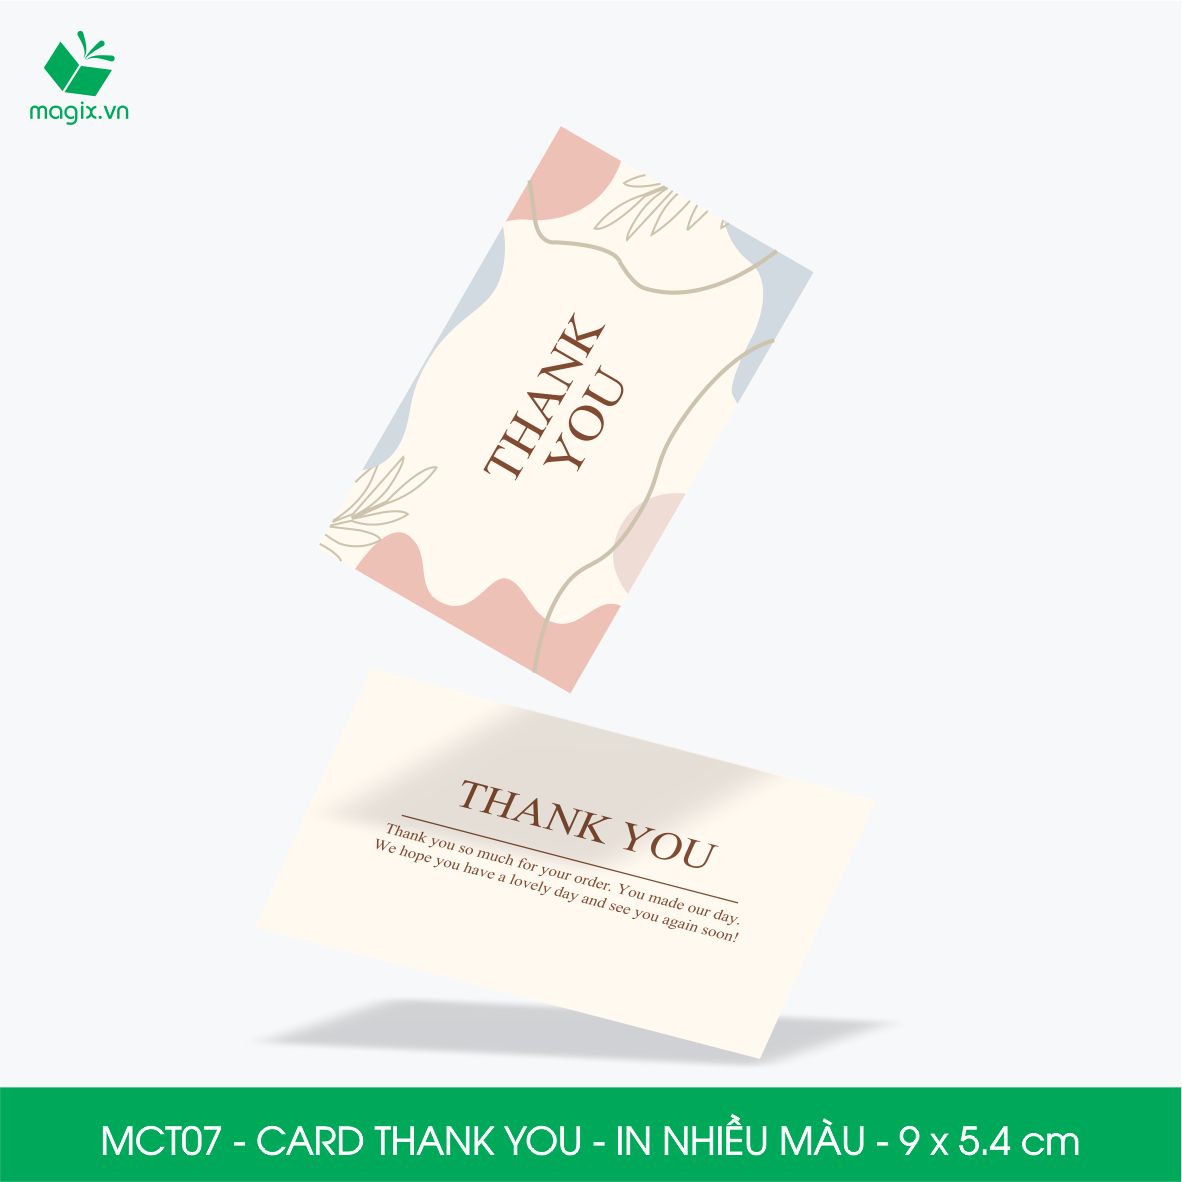 MCT07 - 9x5.4 cm - 50 Card Thank you, Thiệp cảm ơn khách hàng, card cám ơn cứng cáp sang trọng